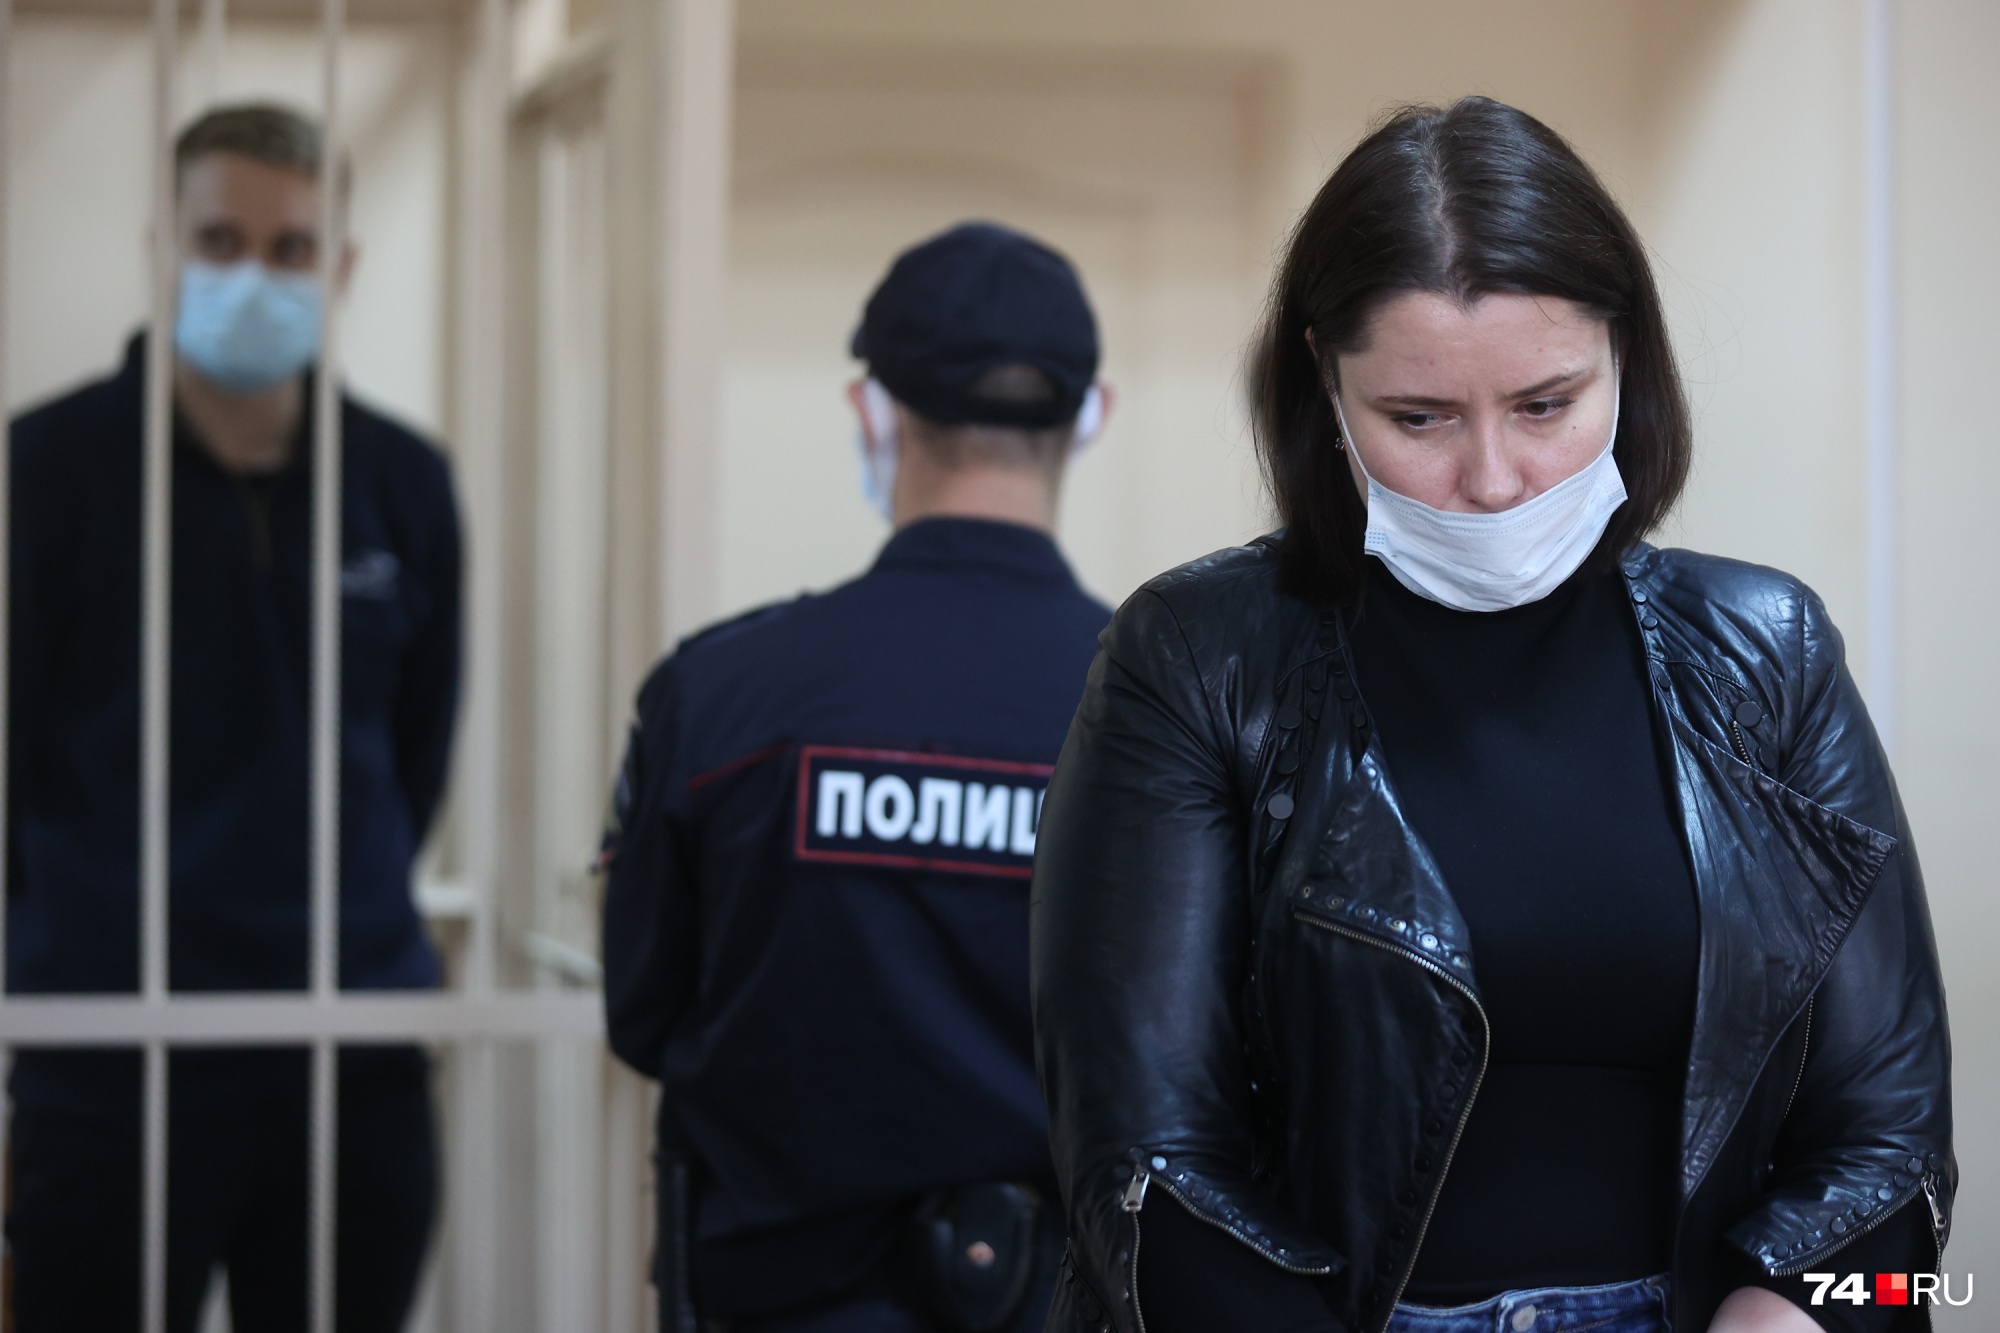 Адвокат Анастасия Магдеева просила суд отпустить Дмитрия Зыкова под залог или на домашний арест